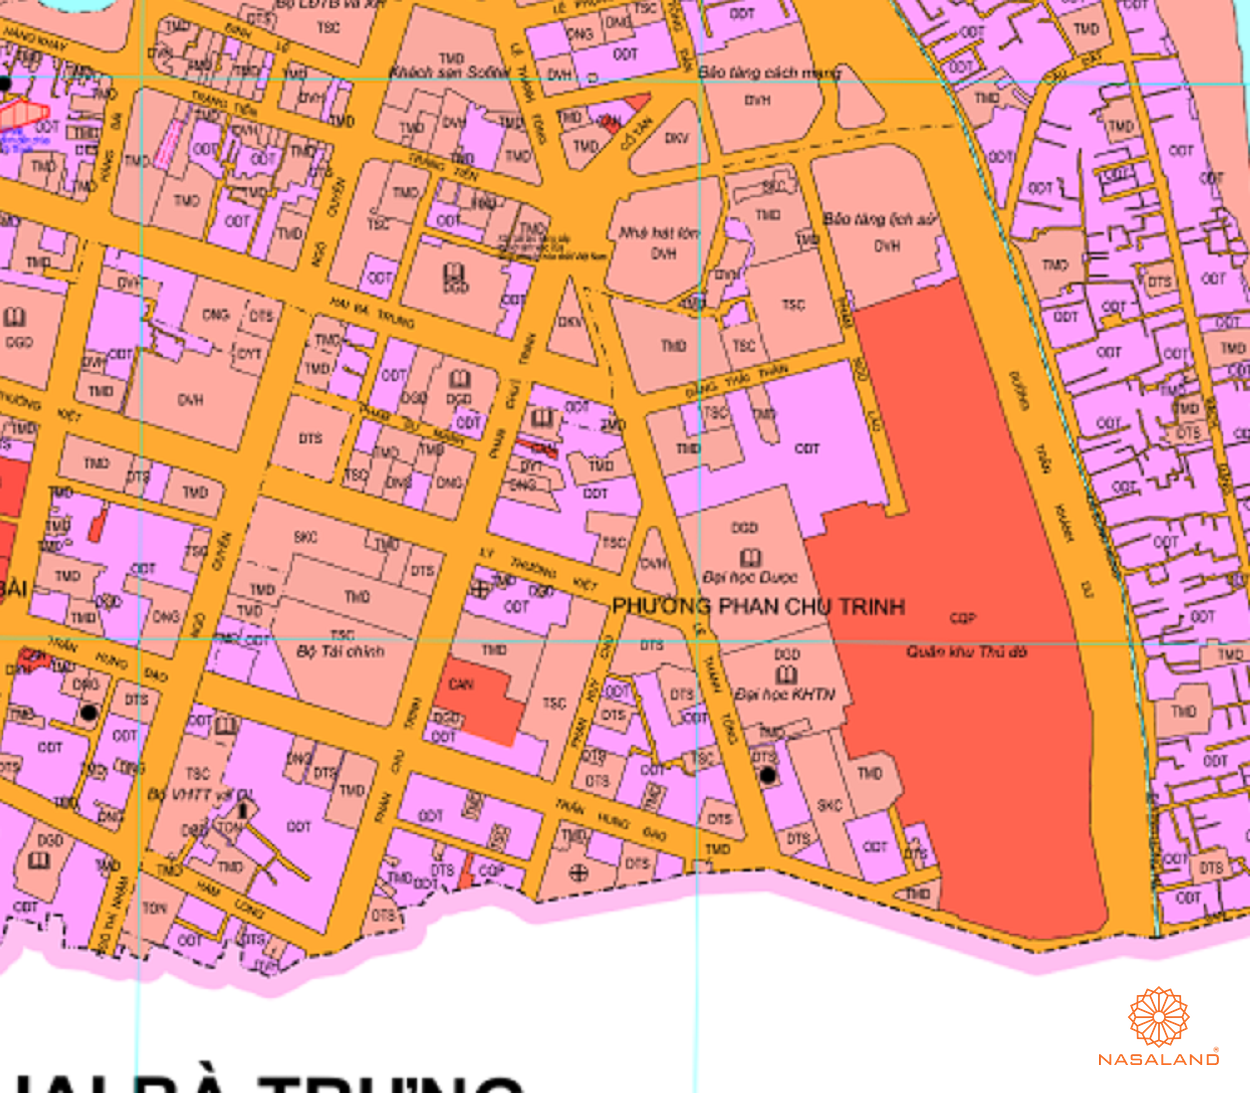 Bản đồ quy hoạch sử dụng đất Phường Phan Chu Trinh theo bản đồ quy hoạch sử dụng đất năm 2020 Quận Hoàn Kiếm, Thành phố Hà Nội.